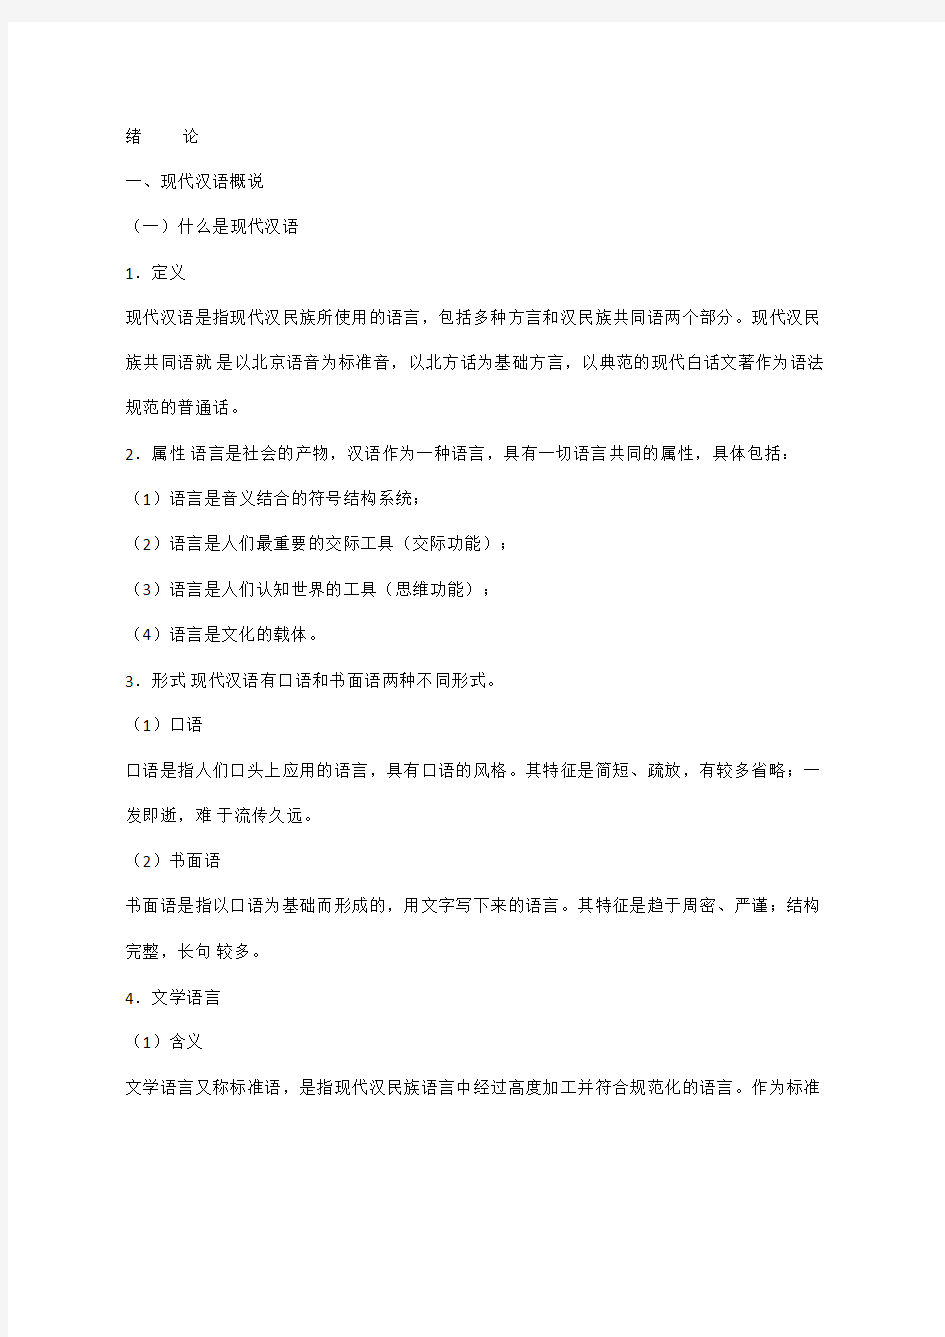 黄伯荣廖序东现代汉语全册知识点总结(6版)